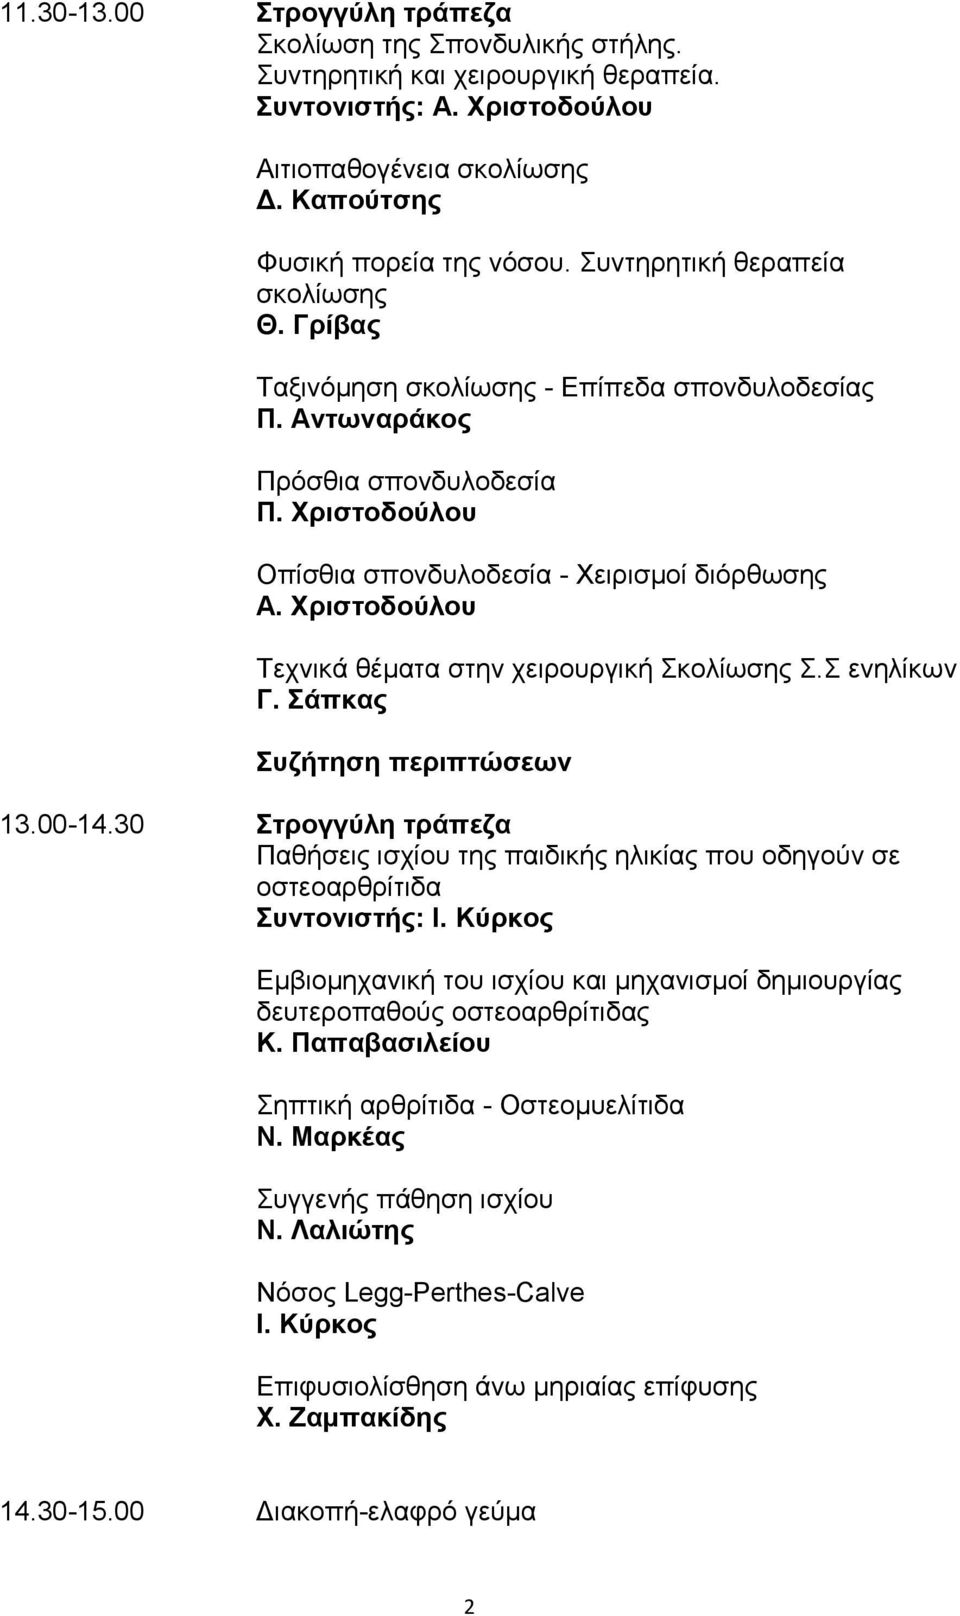 Χριστοδούλου Τεχνικά θέματα στην χειρουργική Σκολίωσης Σ.Σ ενηλίκων Γ. Σάπκας Συζήτηση περιπτώσεων 13.00-14.